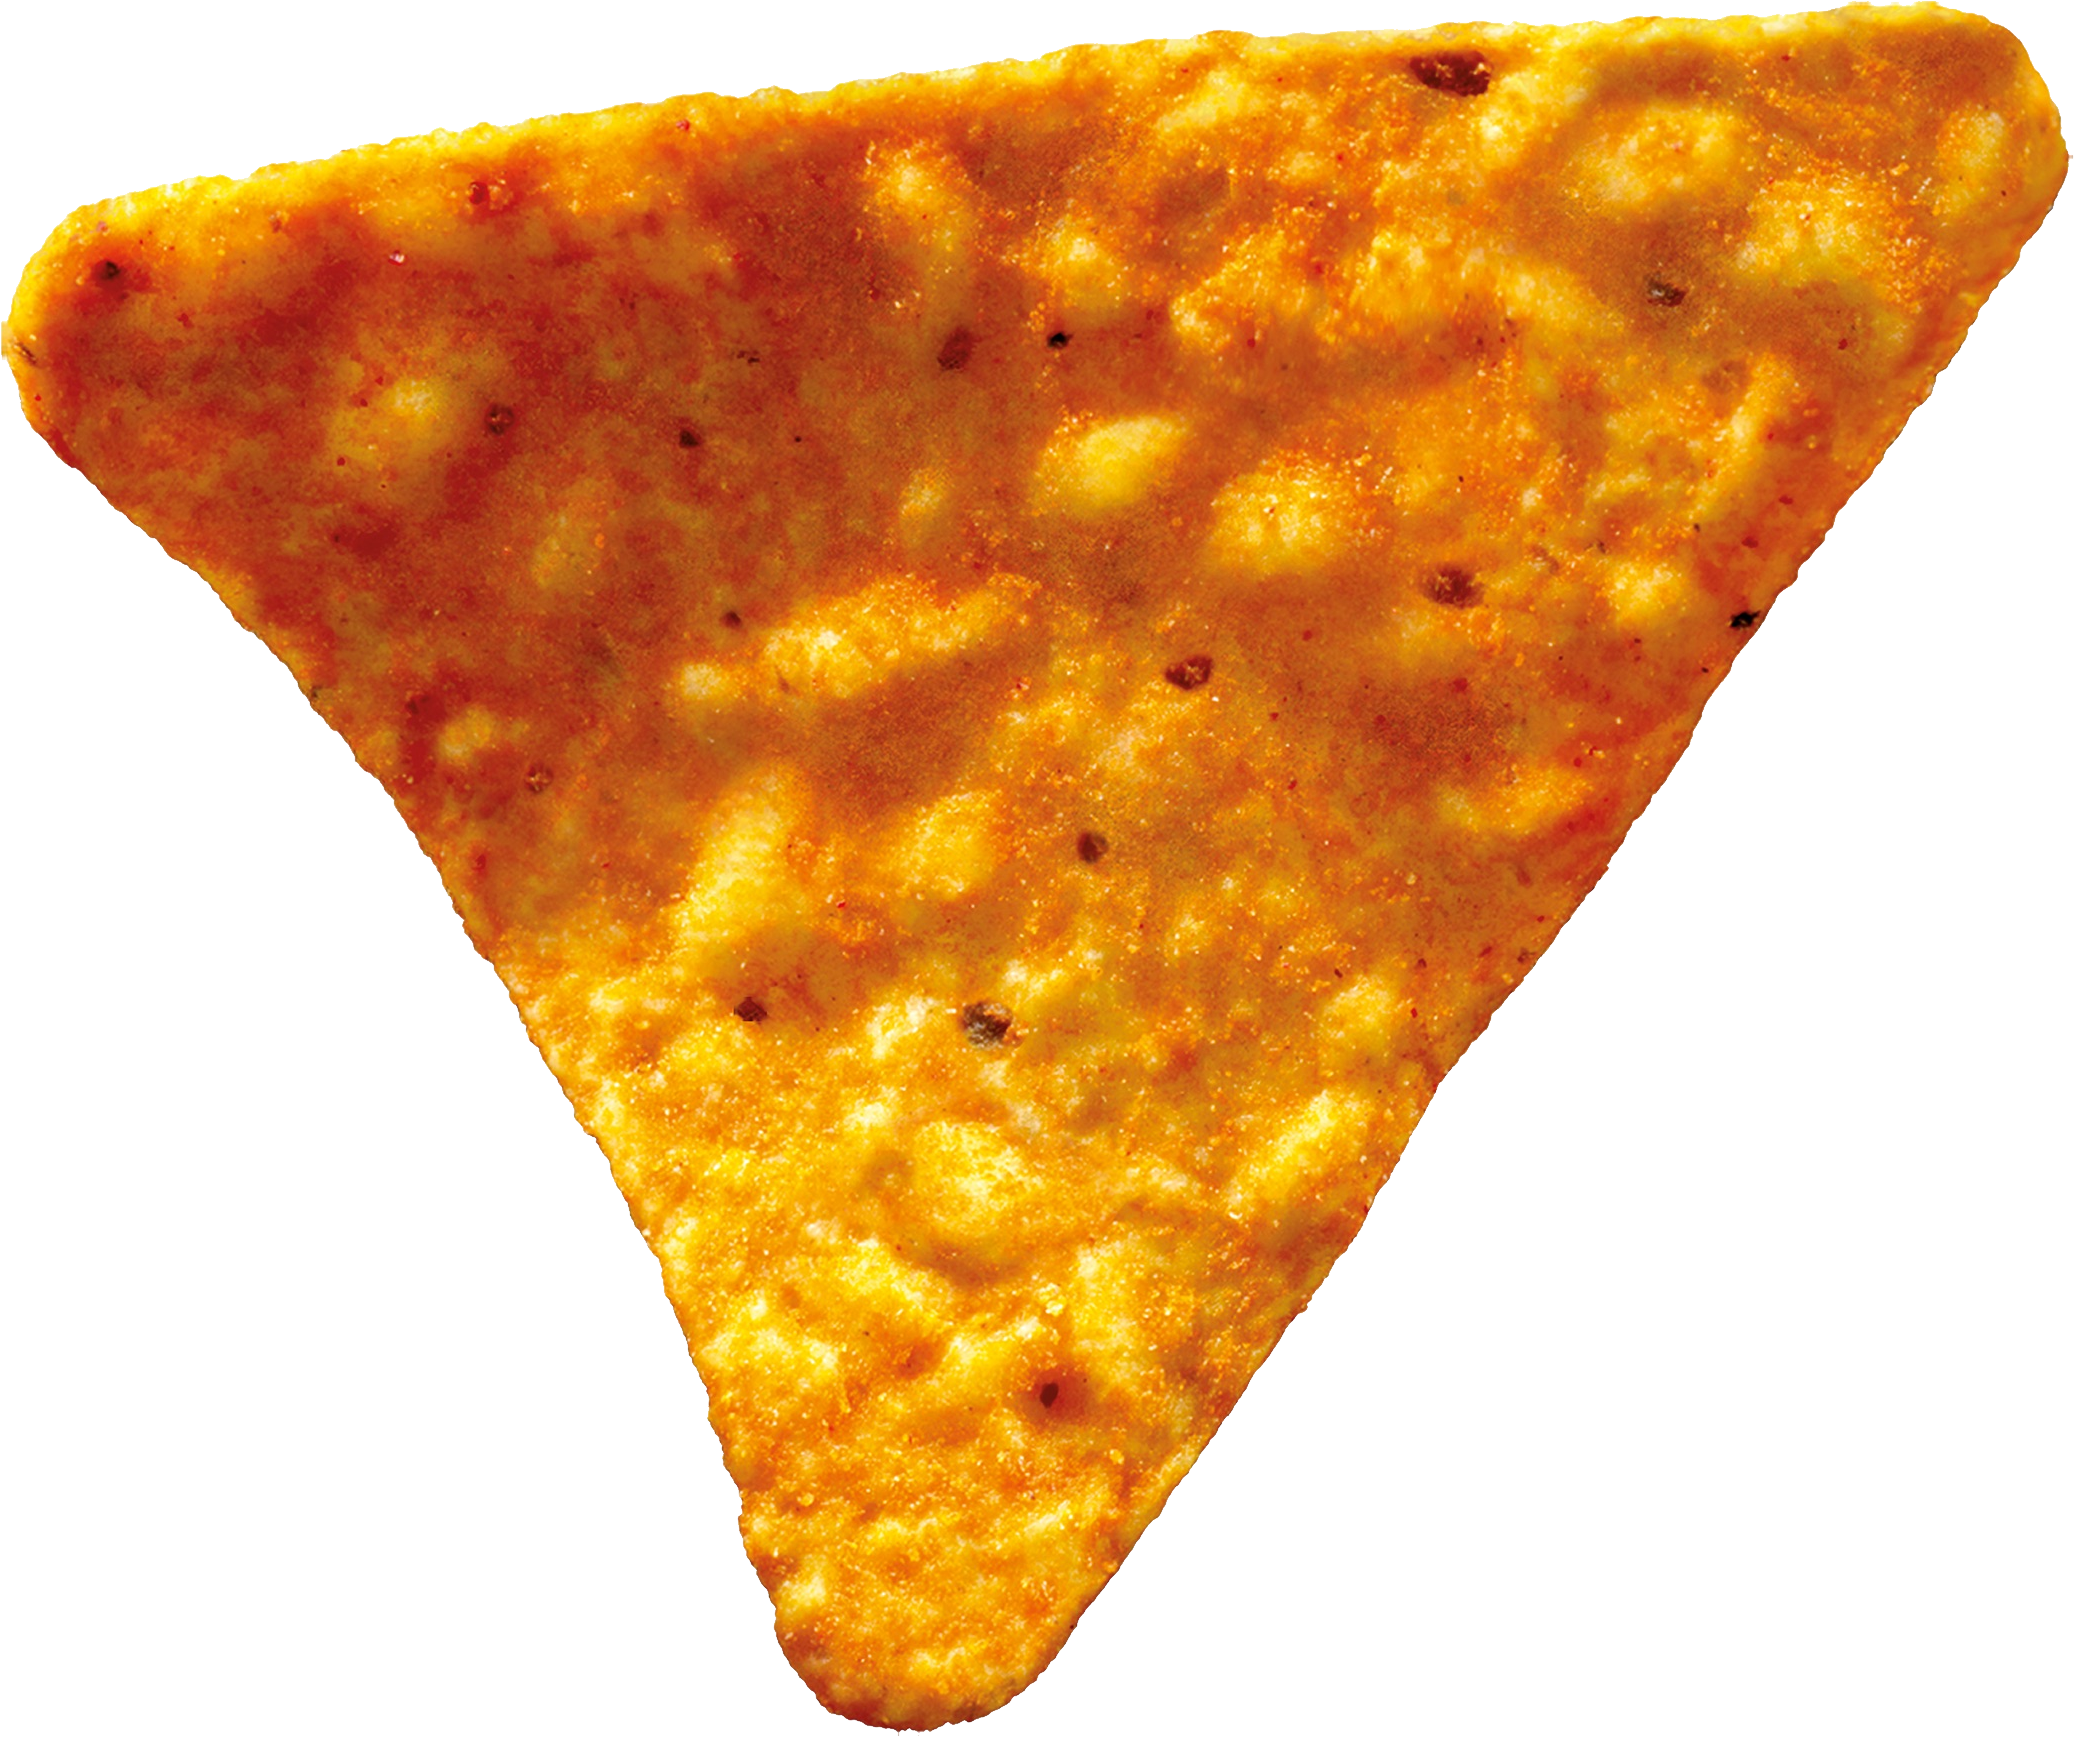 Doritos Chips Background PNG Image